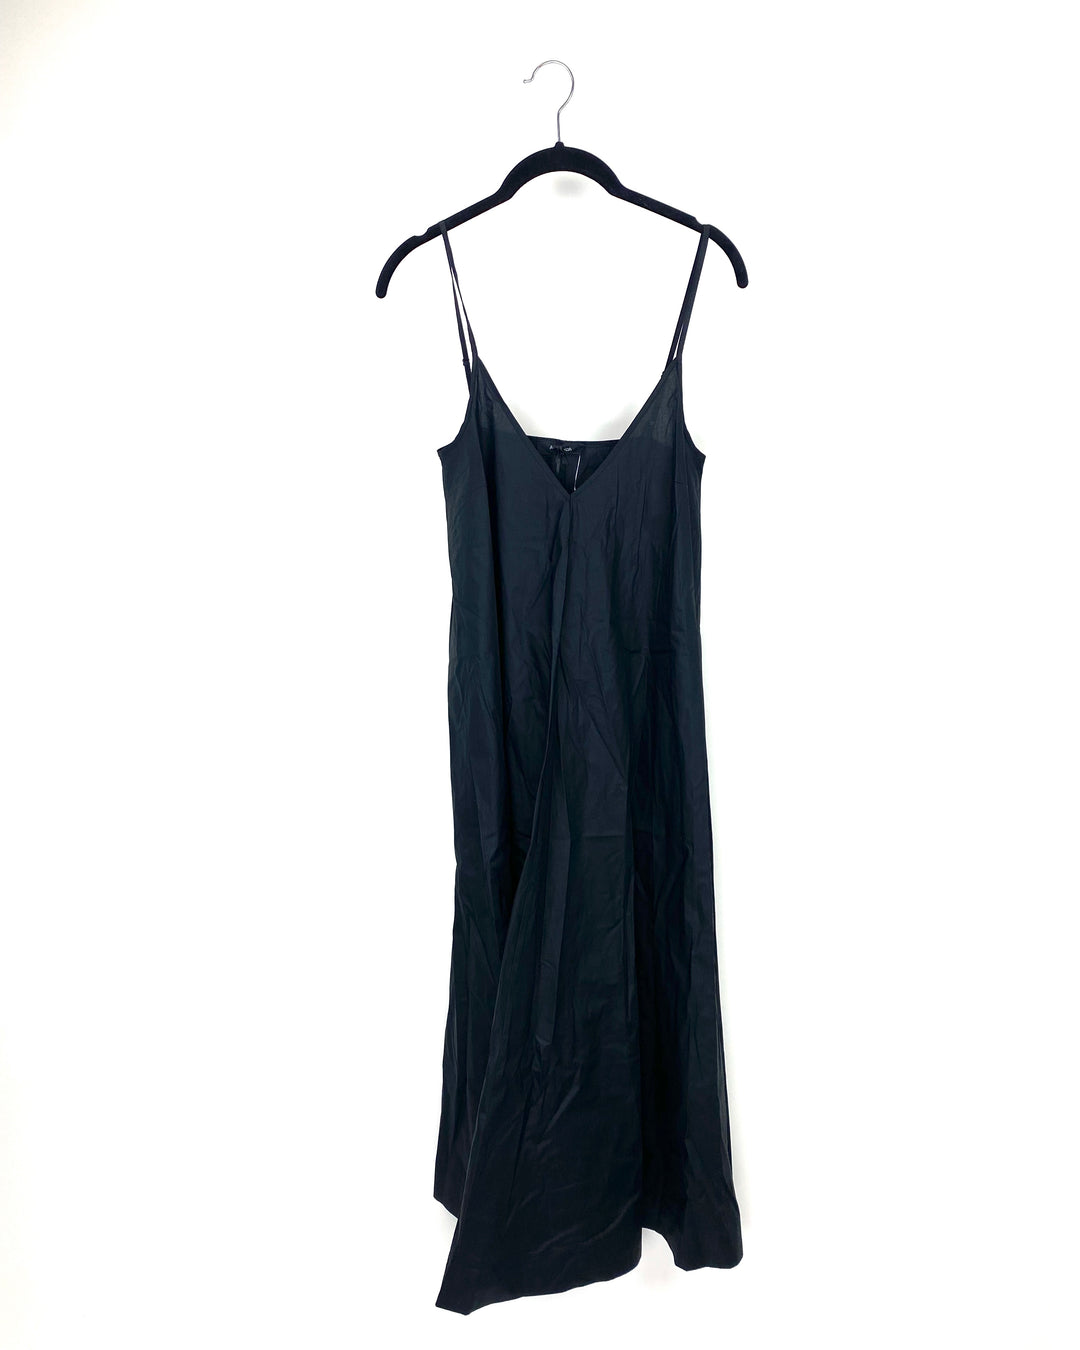 Long Black Dress - Size 6